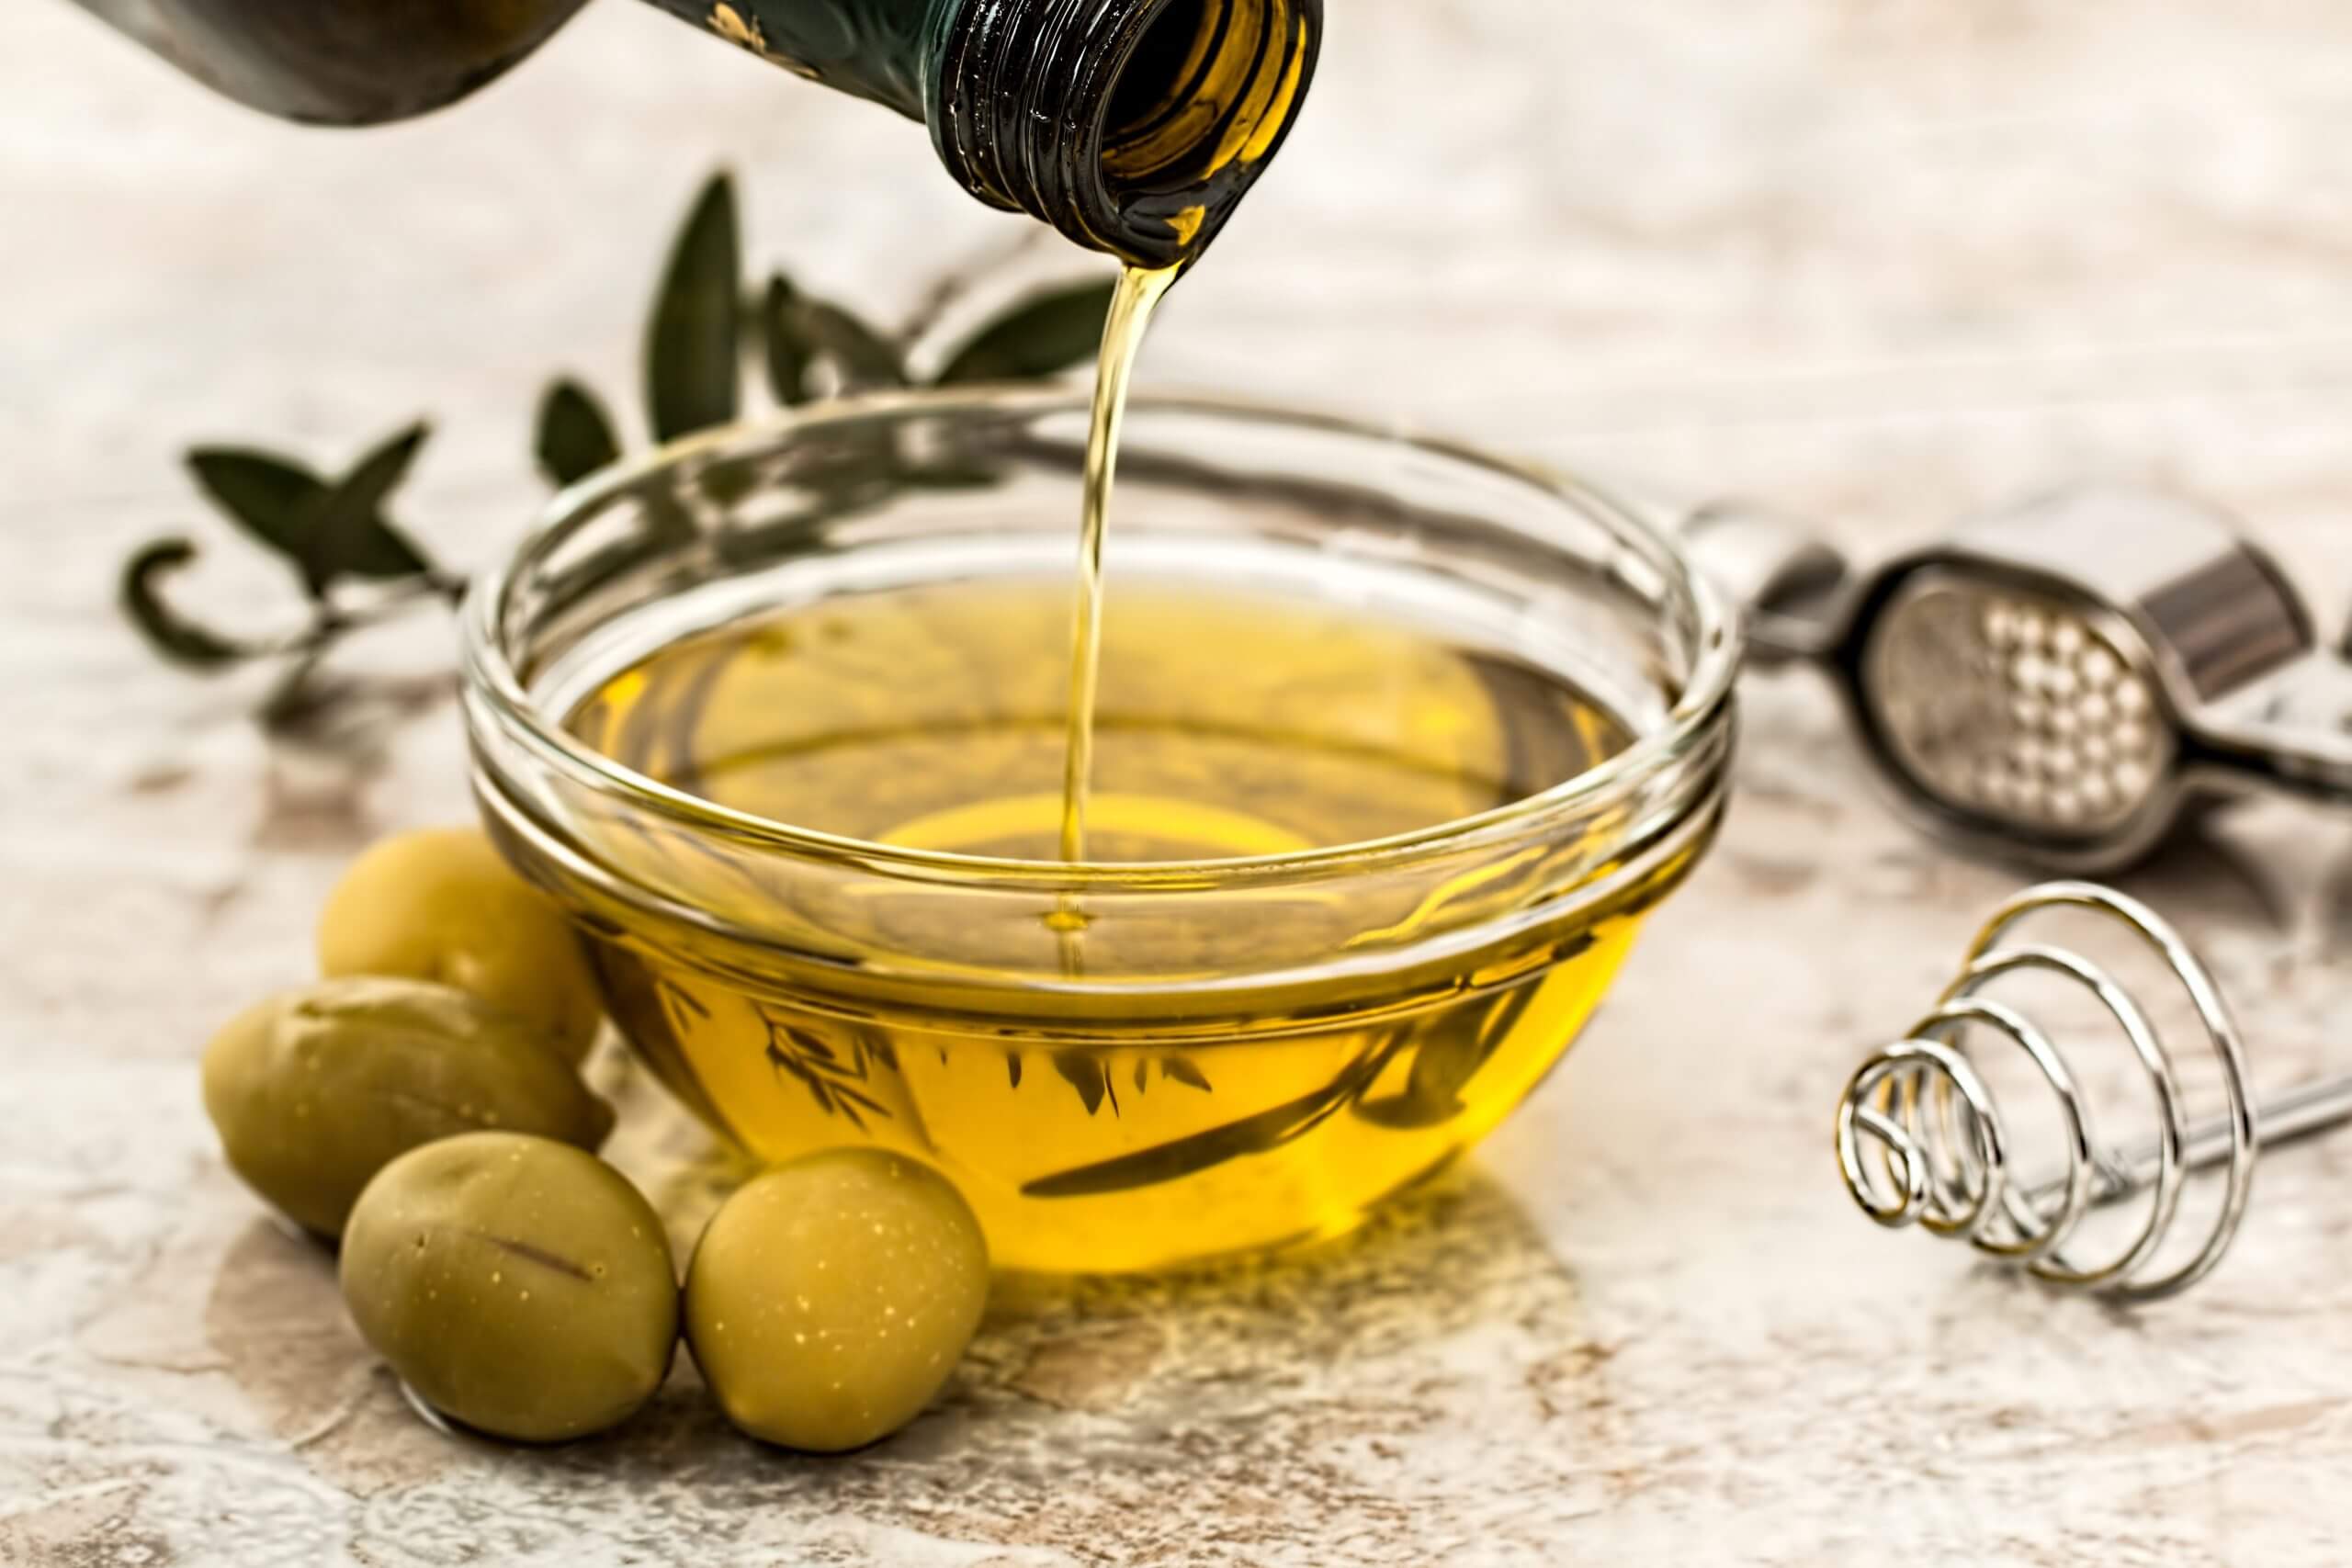 Huile d’olive monovariétale et huile d’olive d’assemblage